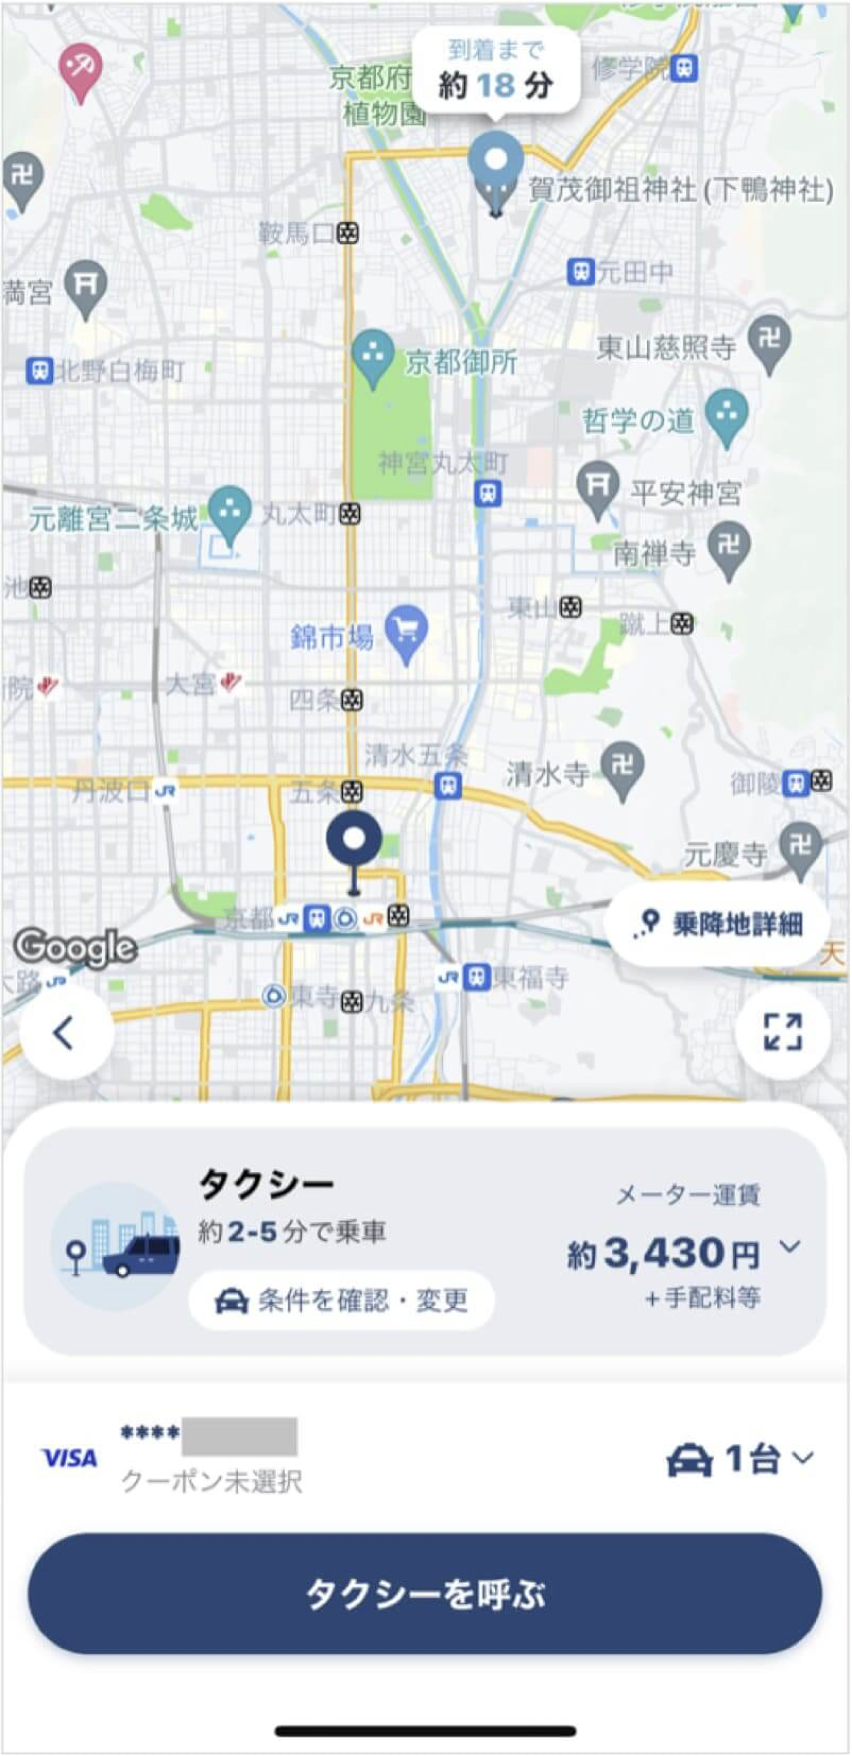 京都駅から下鴨神社までのタクシー料金・所要時間まとめ